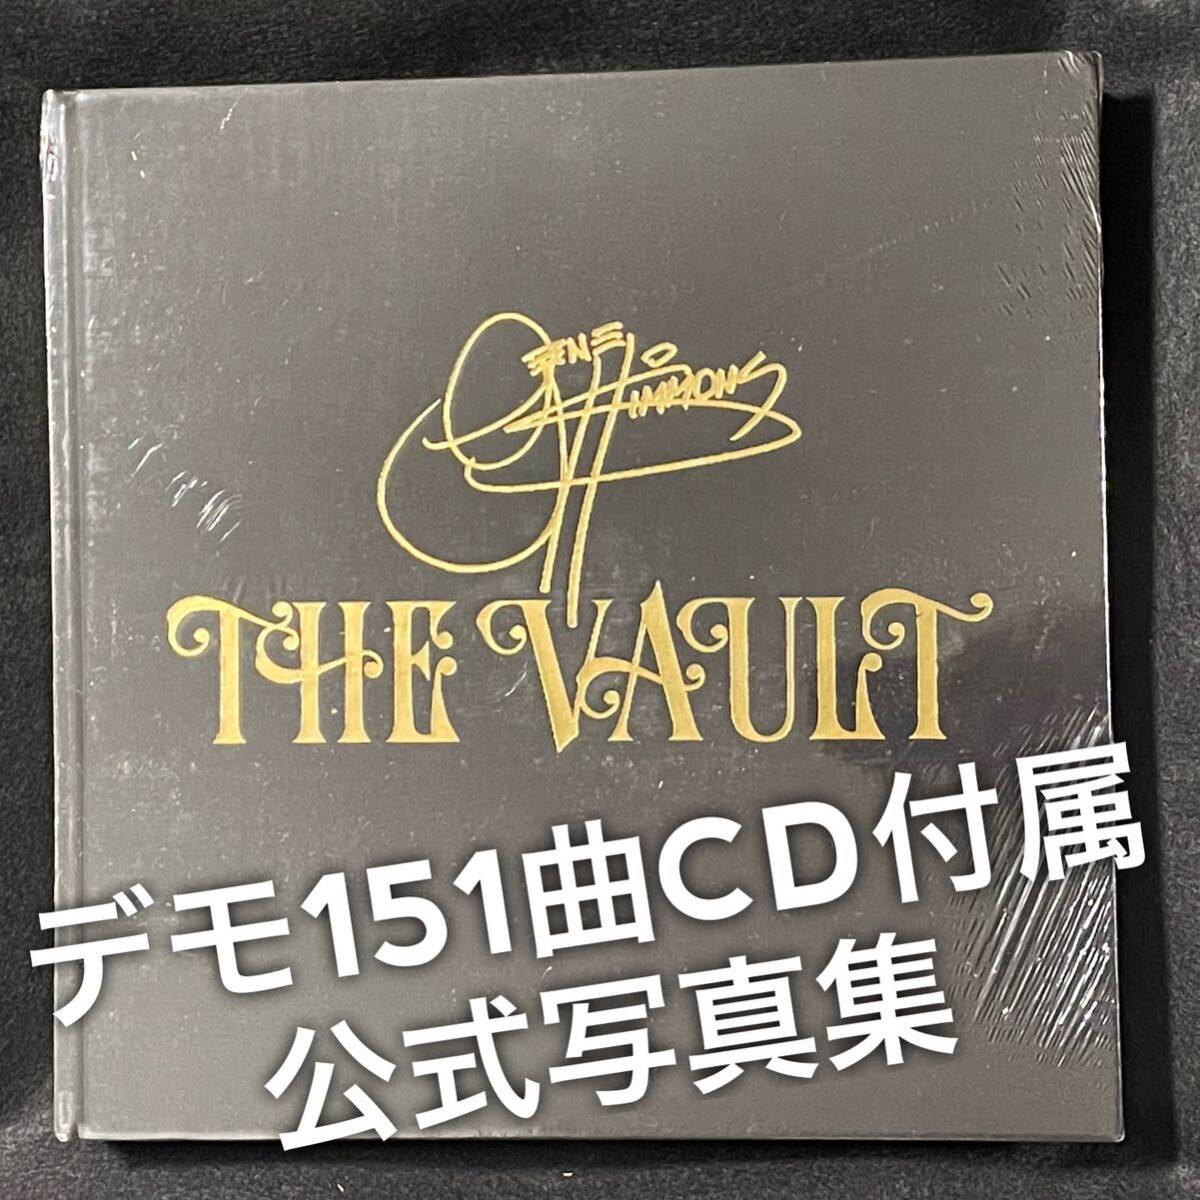 【最終値下】Gene Simmons The vault 公式写真集 デモCD 11枚付属 ジーンシモンズ KISS キッスの画像1